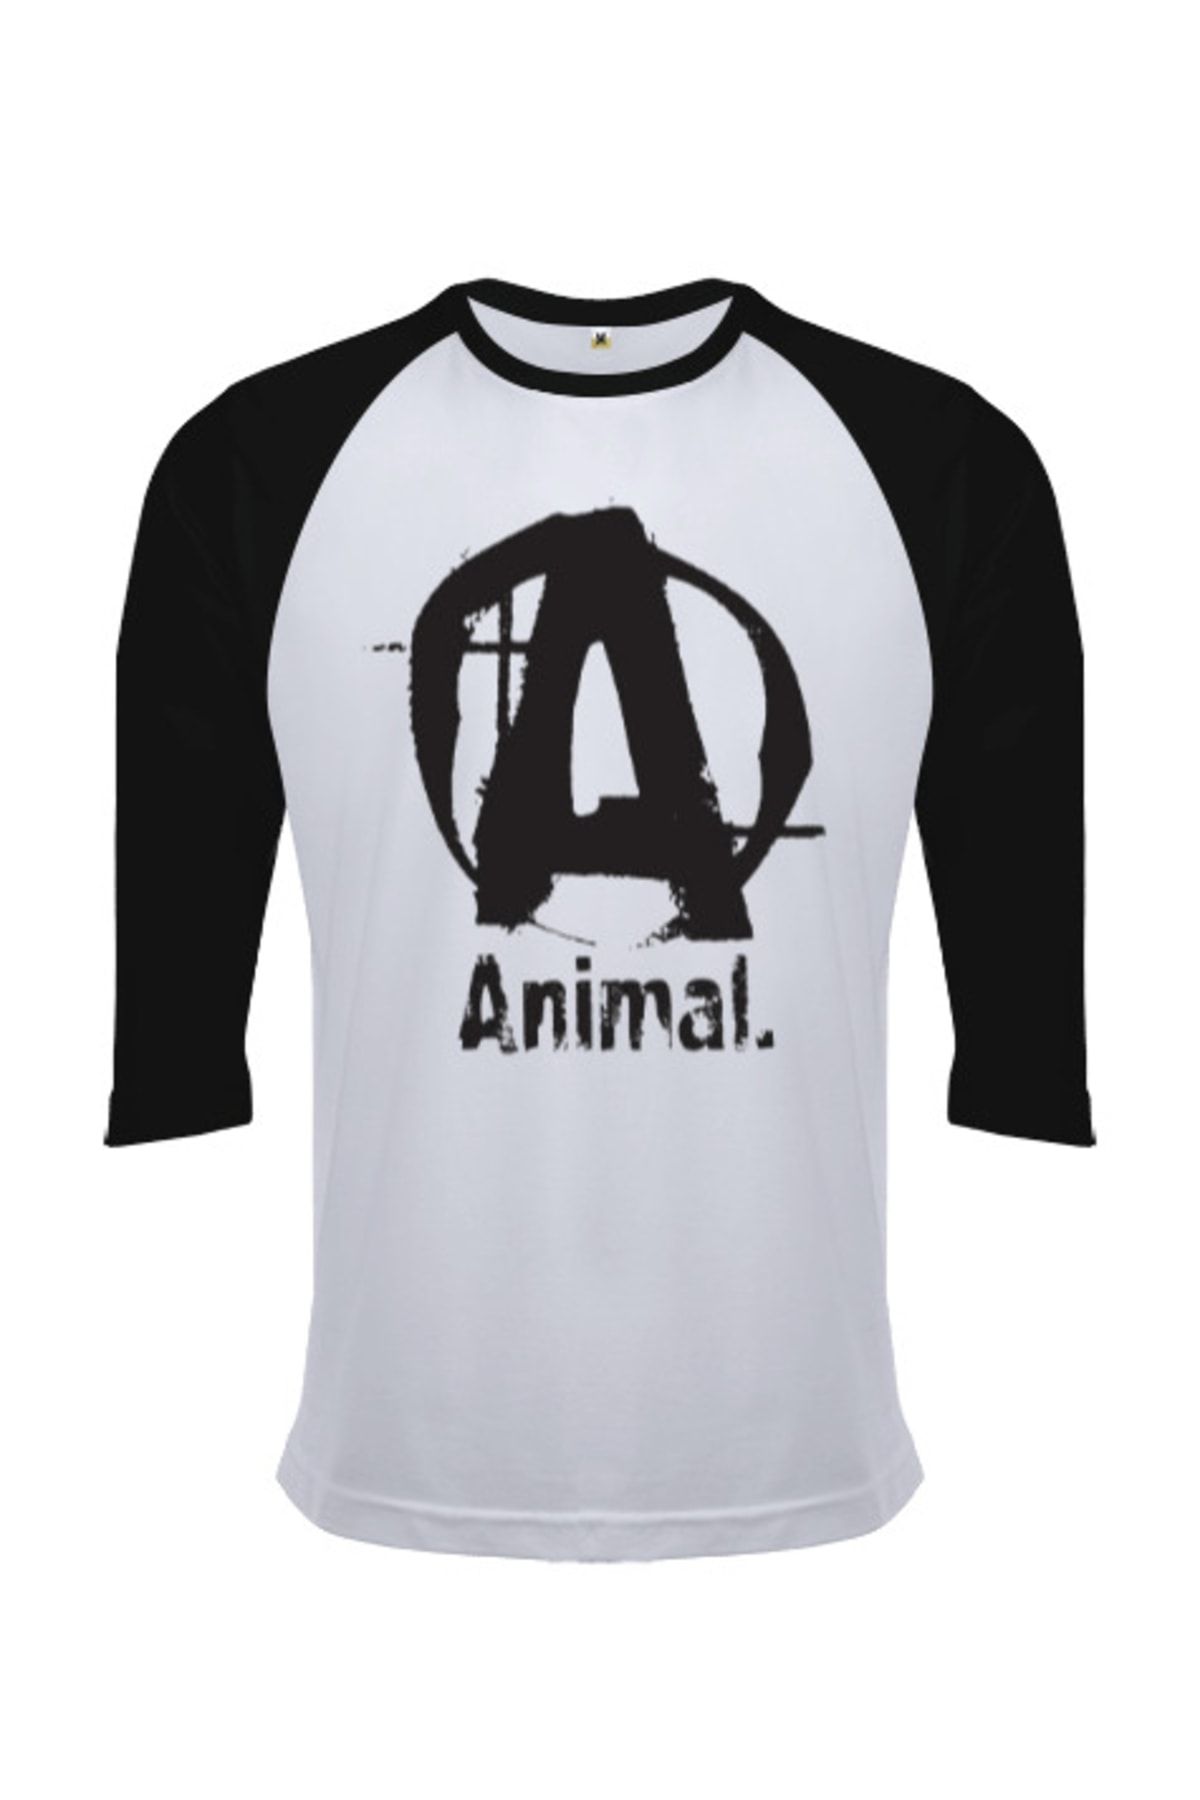 Tisho Animal Gym Vücut Geliştirme Bodybuilding Fitness Tasarım Orjinal Reglan 3/4 Kol Unisex Tişört